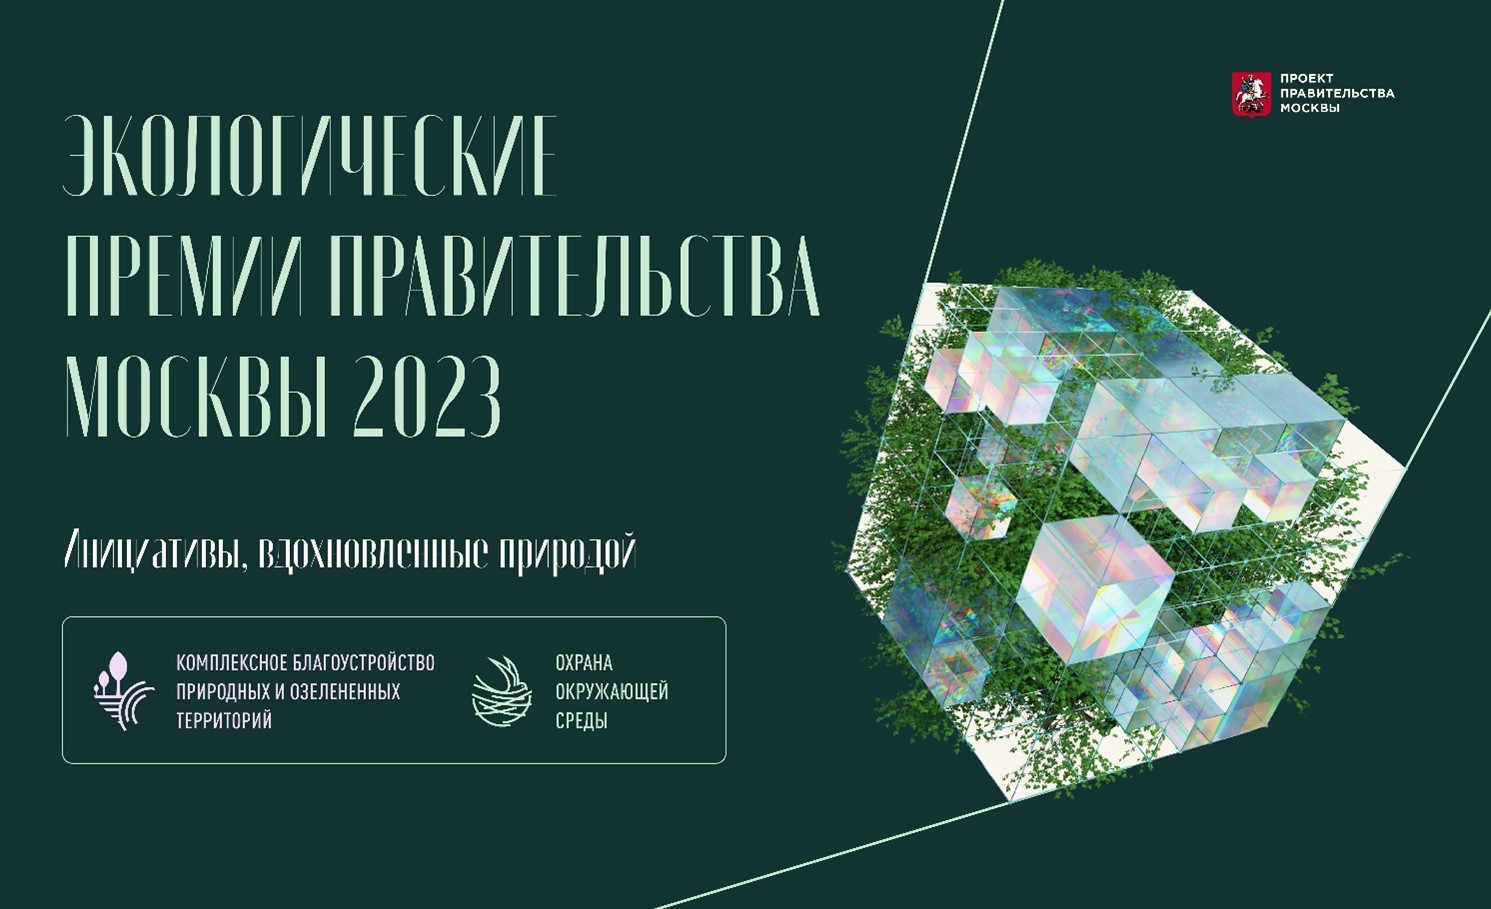 В Москве дан старт приему заявок на соискание премий Правительства Москвы в области охраны окружающей среды и за лучший проект комплексного благоустройства природных и озелененных территорий города.